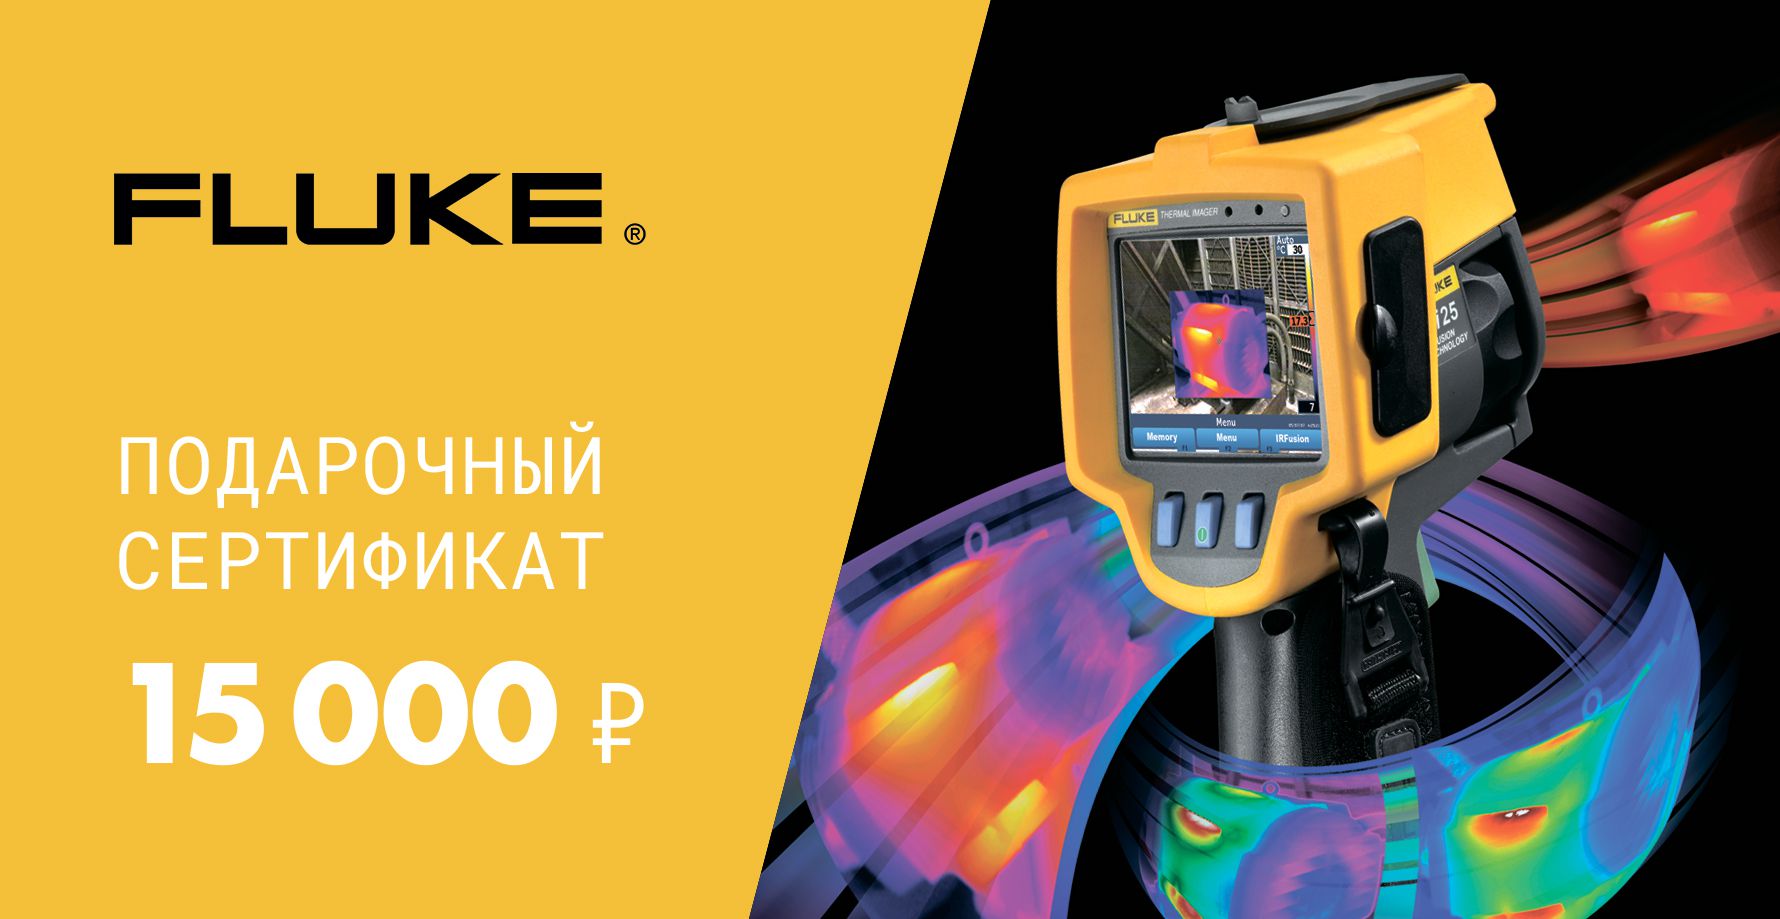 Подарочный сертификат Fluke 15000 руб.